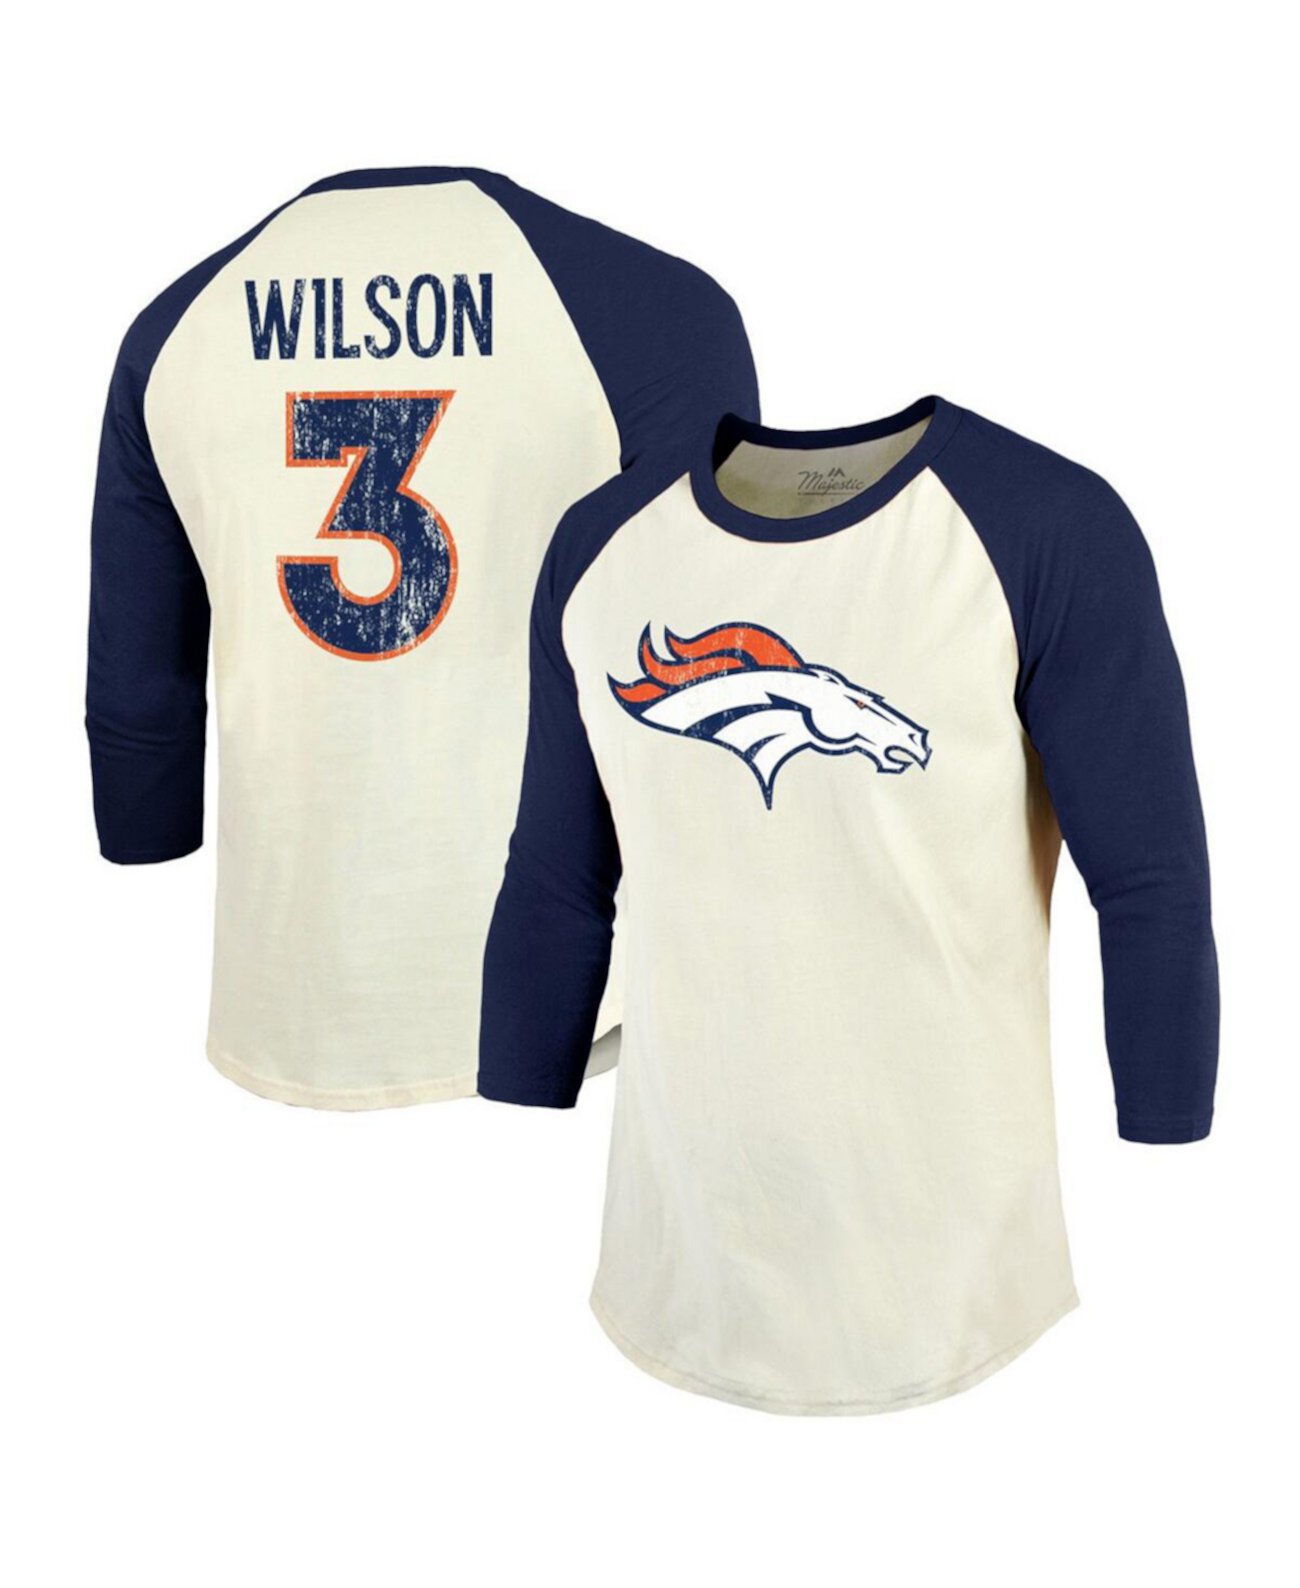 Мужская футболка Threads Russell Wilson кремово-темно-синего цвета Denver Broncos с именем и номером реглан с рукавами 3/4 Majestic